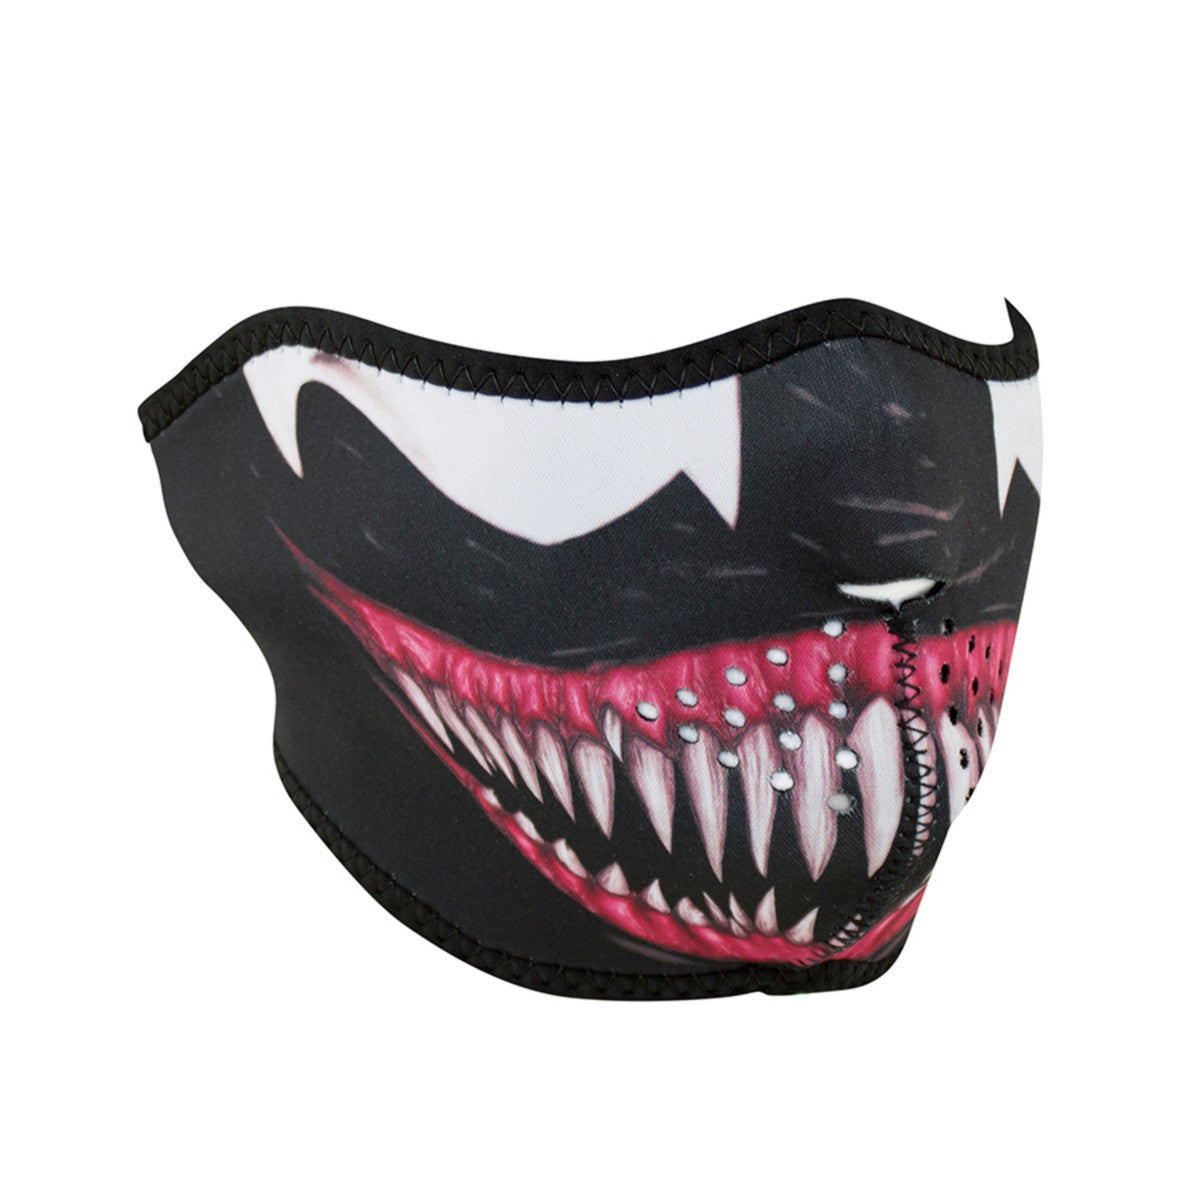 Venom Toxic Neoprene Half Face Mask